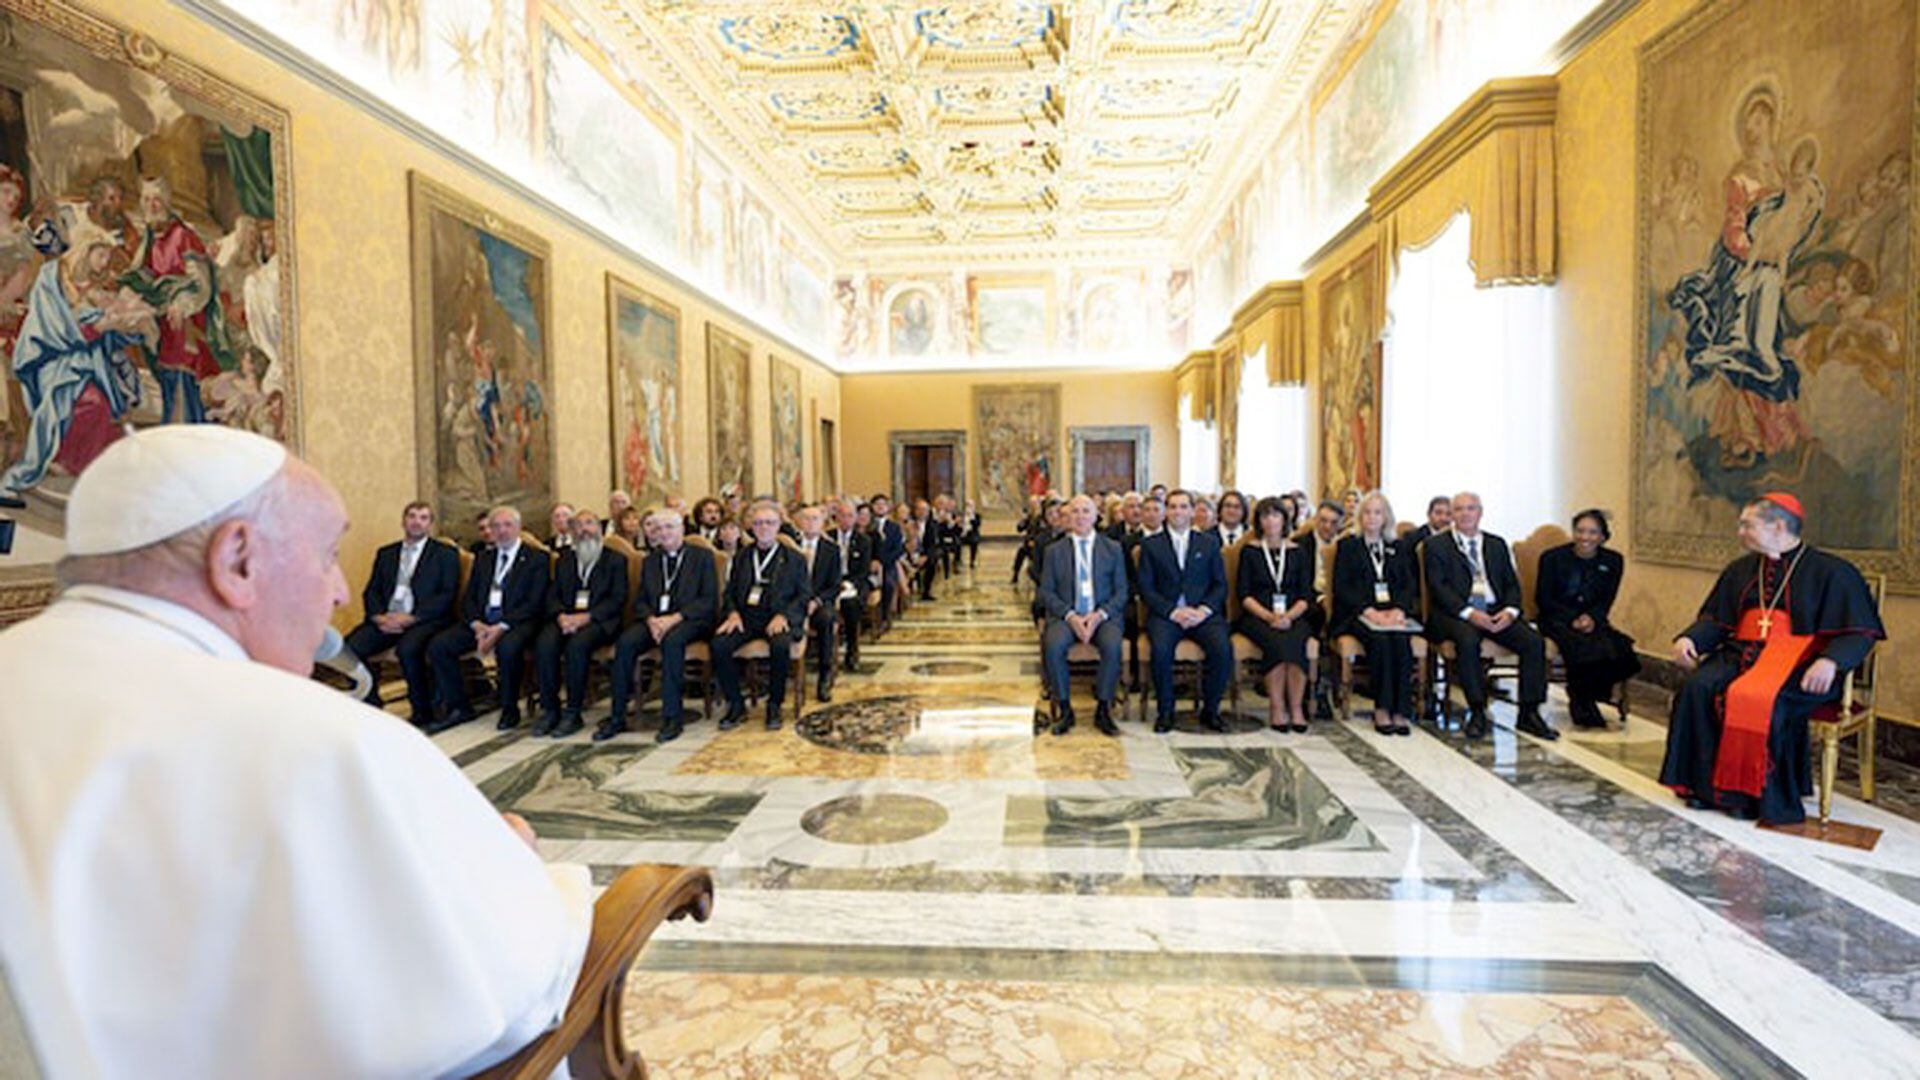 La presentación de León Gieco tuvo lugar durante cierre de un congreso del Instituto de Diálogo Interreligioso (Prensa Vaticano)